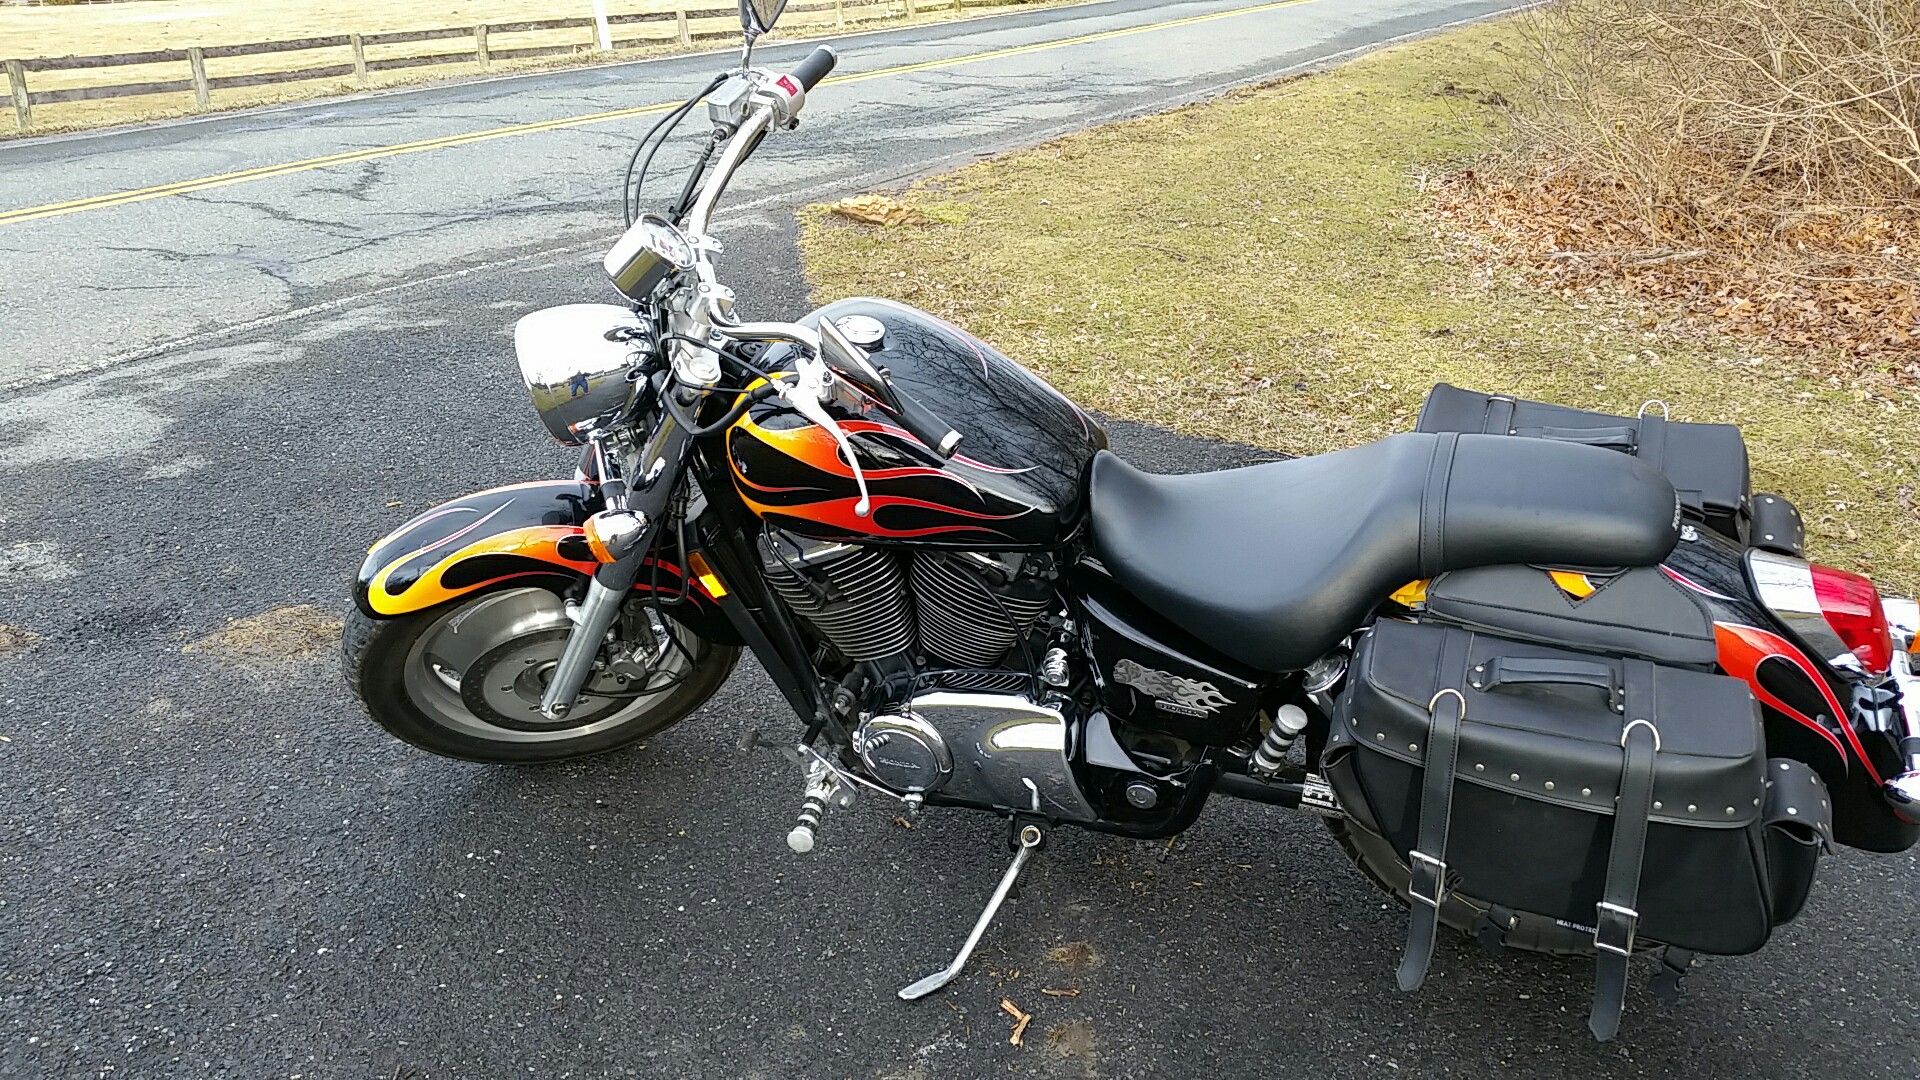 2007 honda sabre motorcycle. Low miles